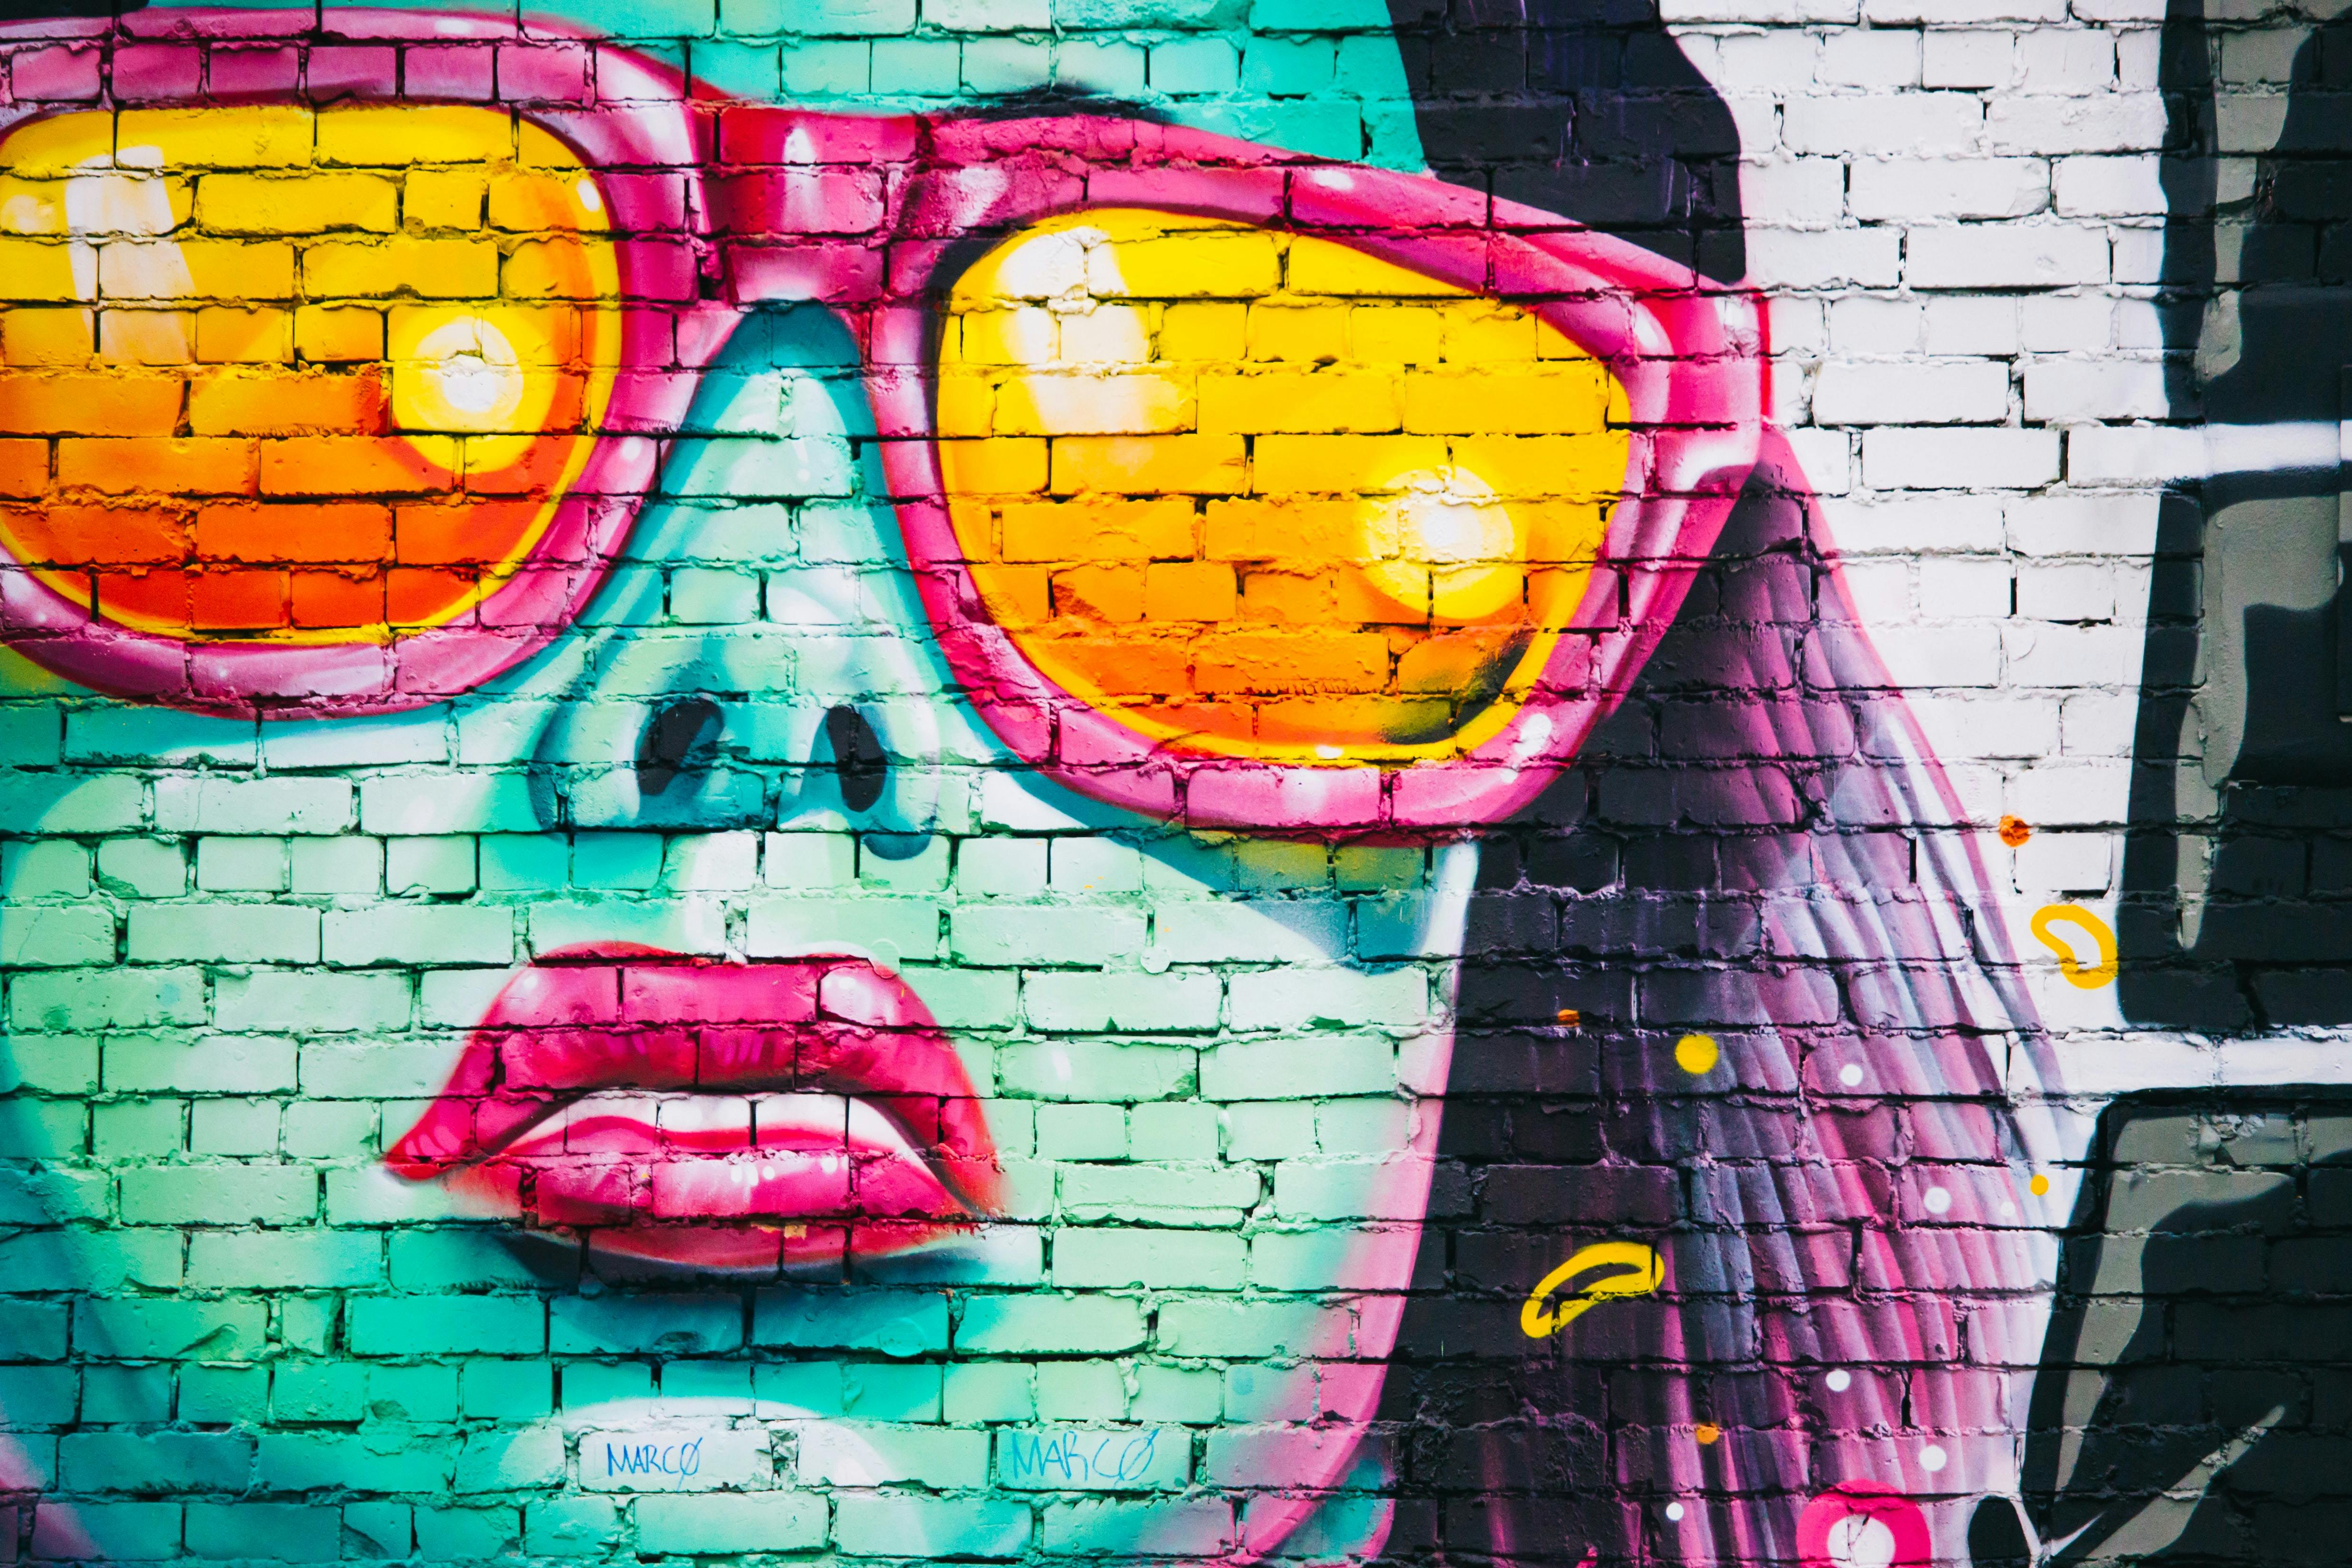 Es ist ein Graffiti mit einer weiblich positionierten Person zu sehen. SIe hat eine sehr coole Attitude und trägt eine Sonnenbrille. Dominierende Farben auf dem Graffiti sind Türkis, Pink und Gelb.